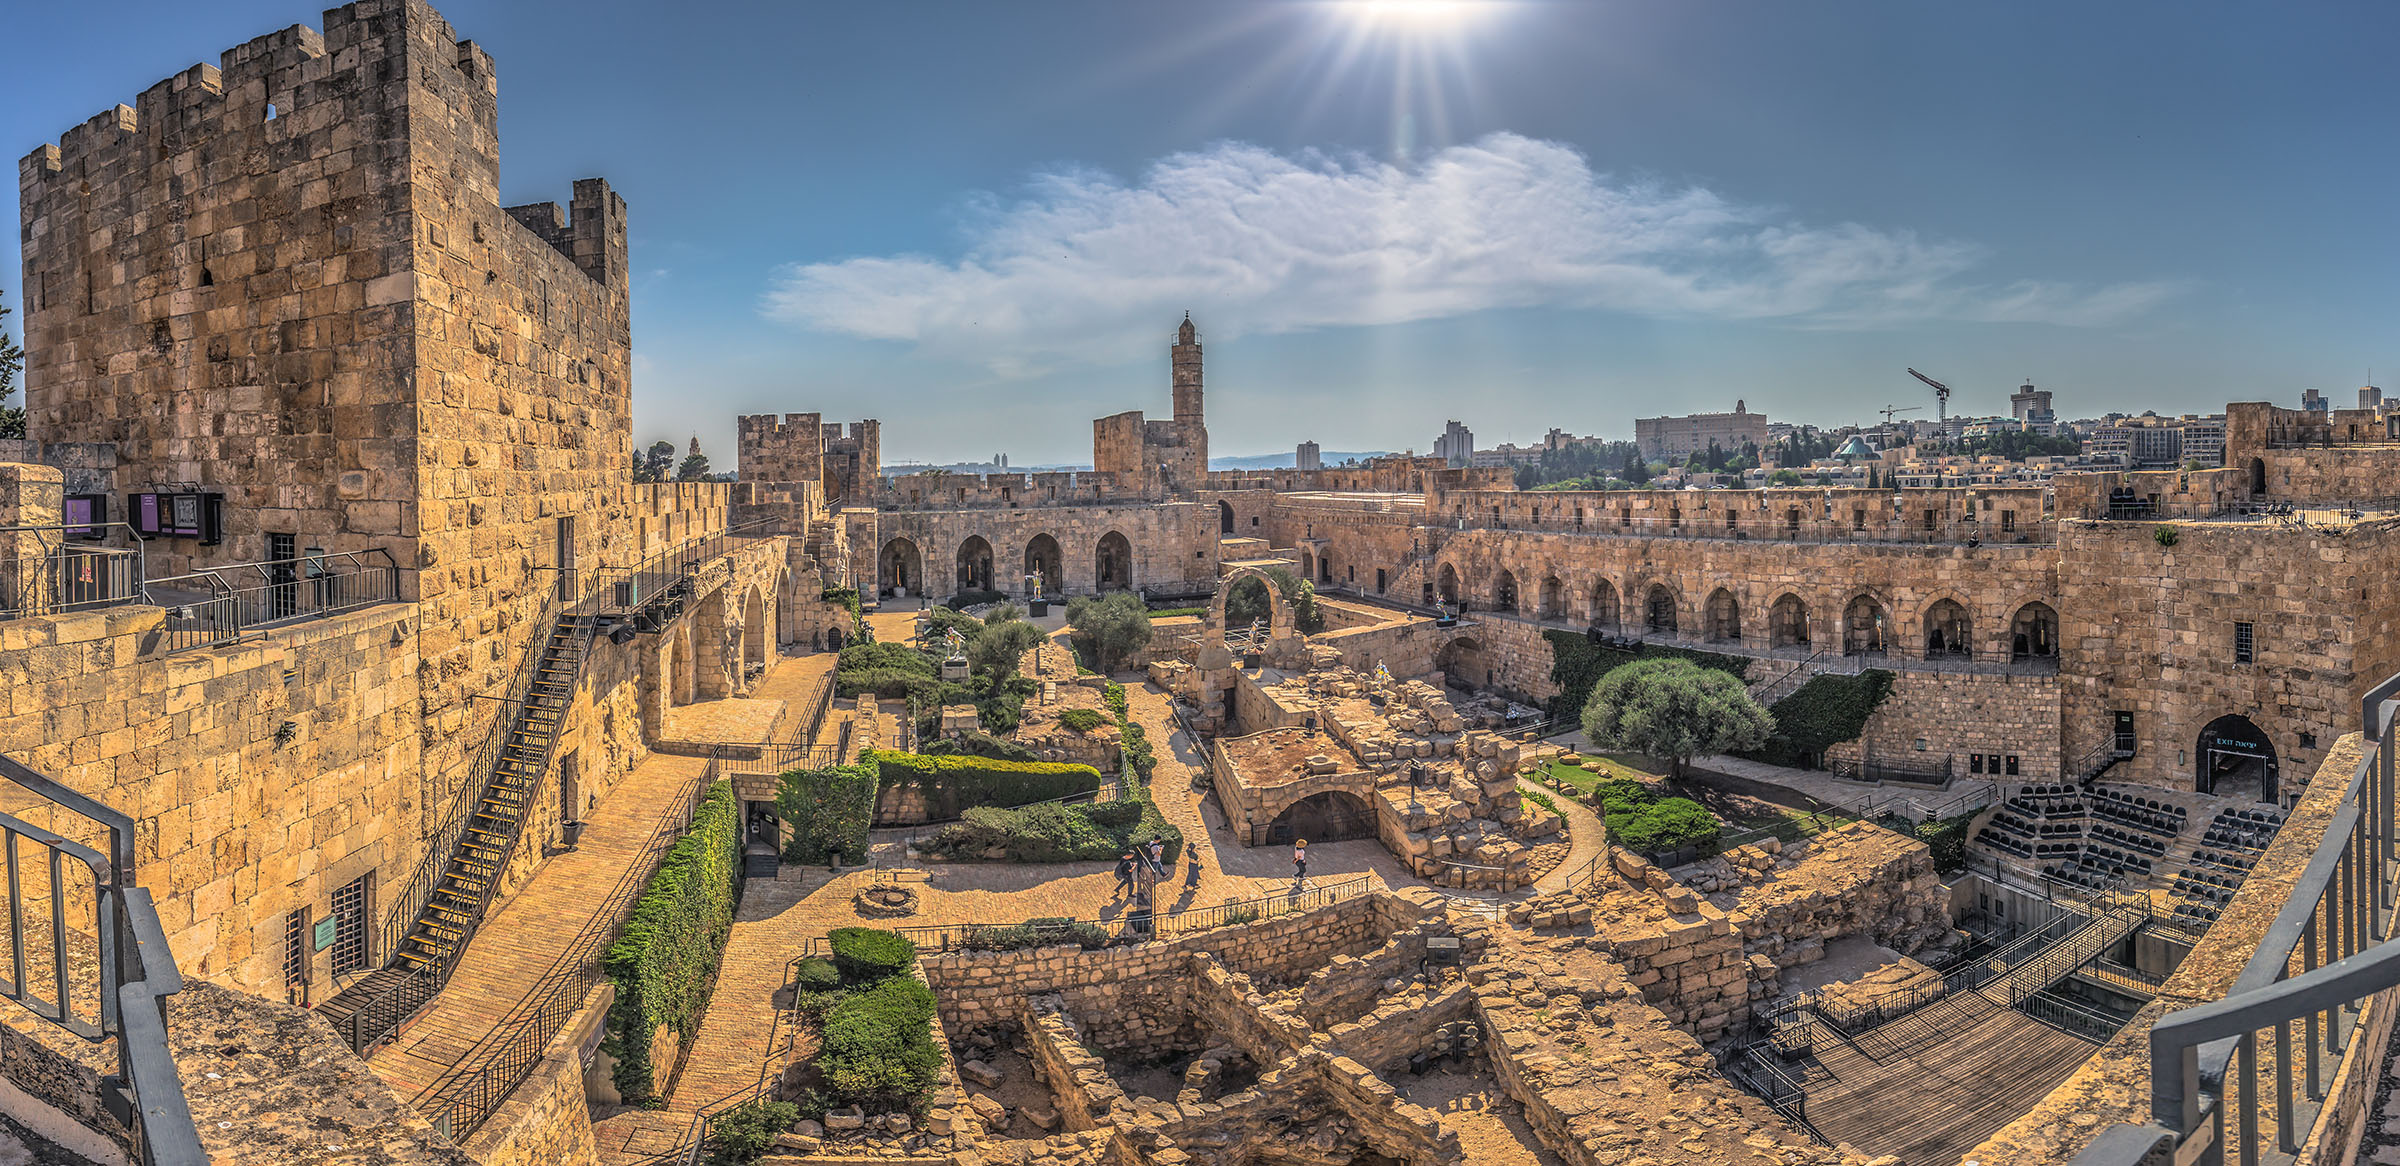 Jerusalem, a place where many key bible events took place